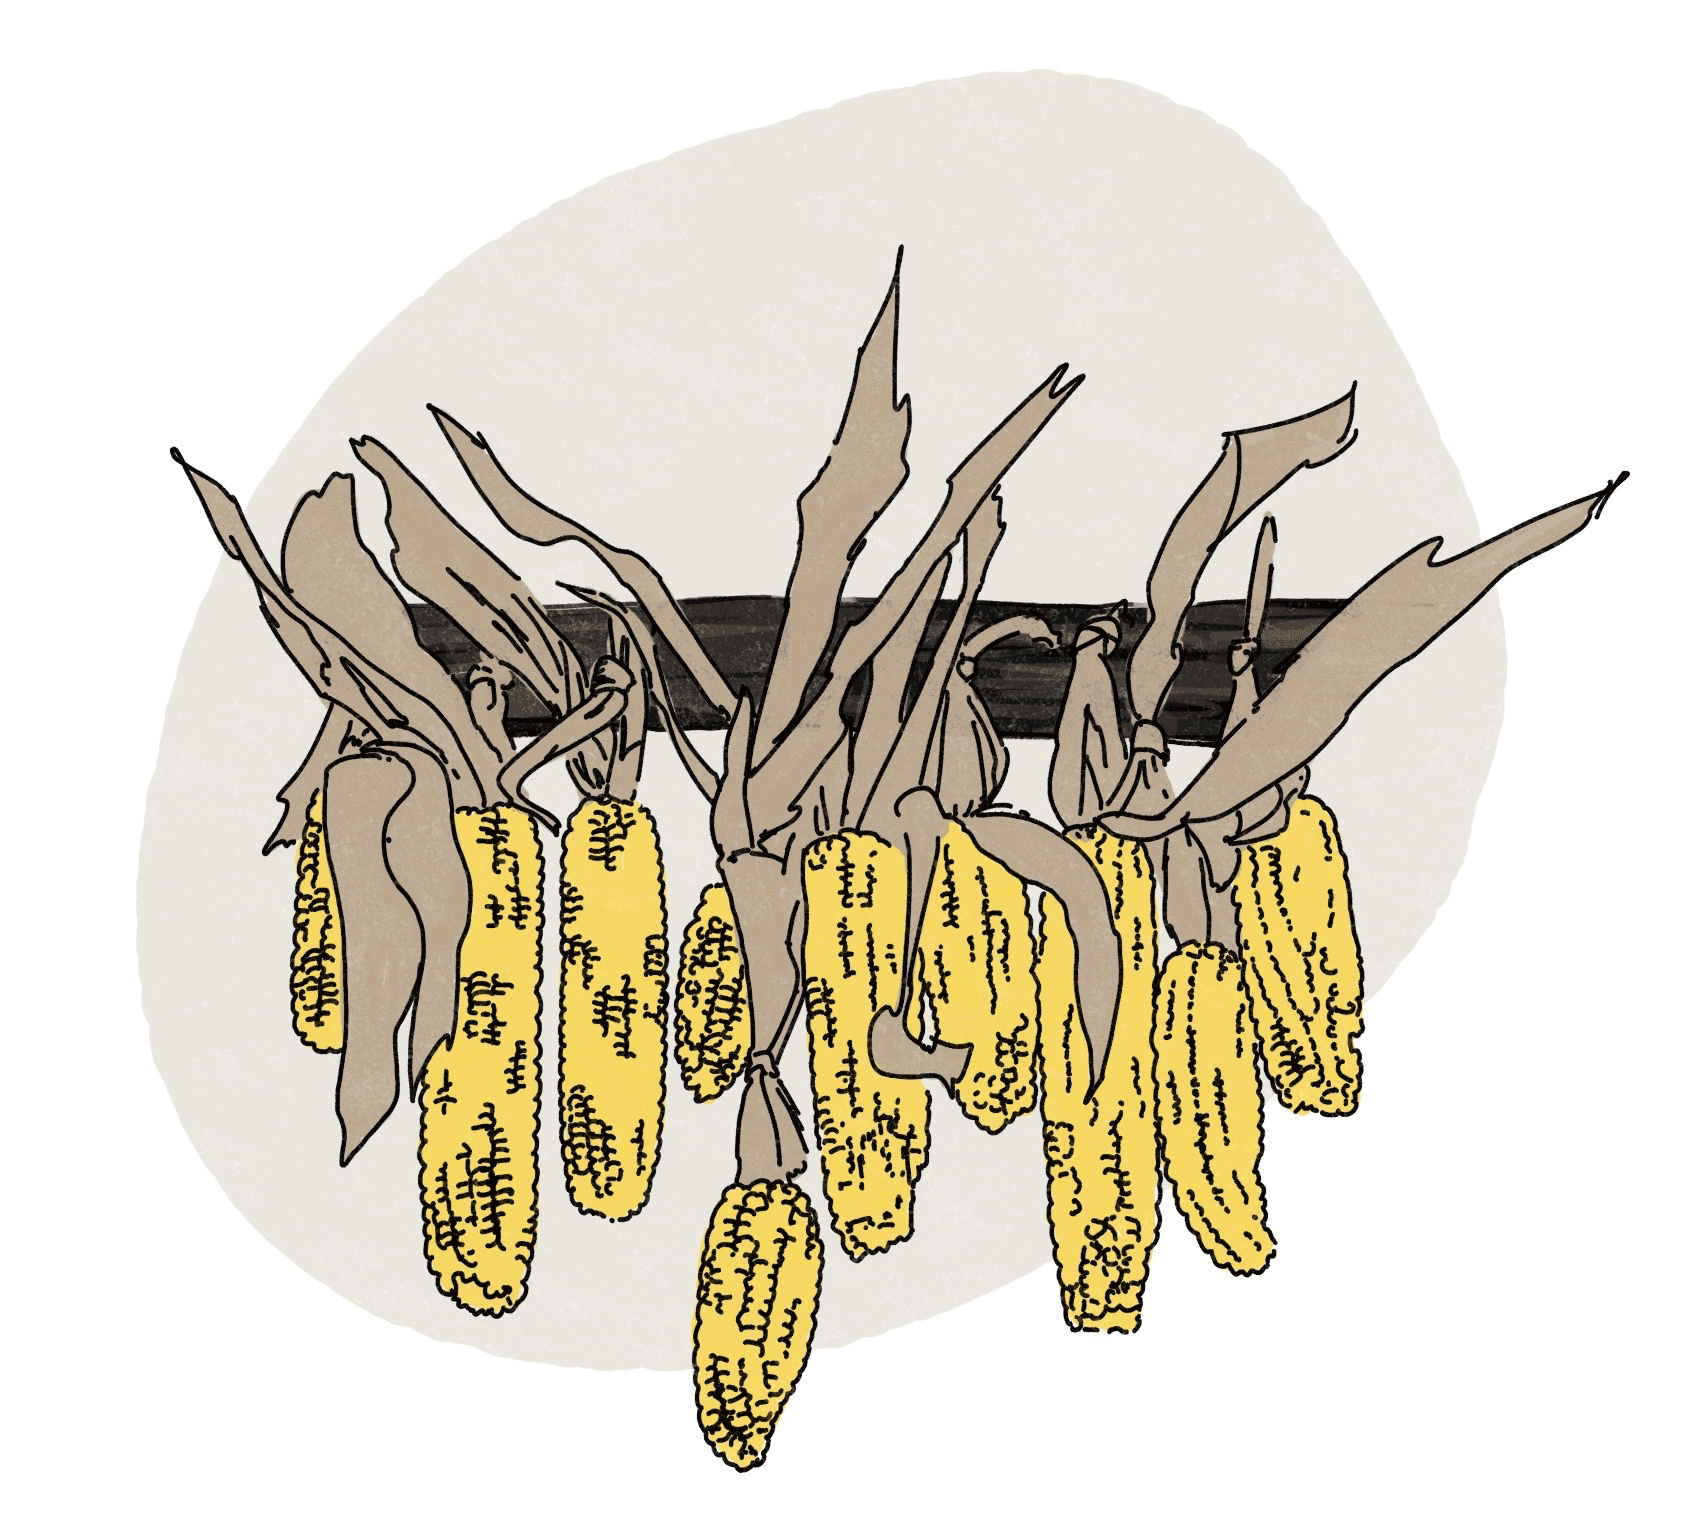 Illustration of corn